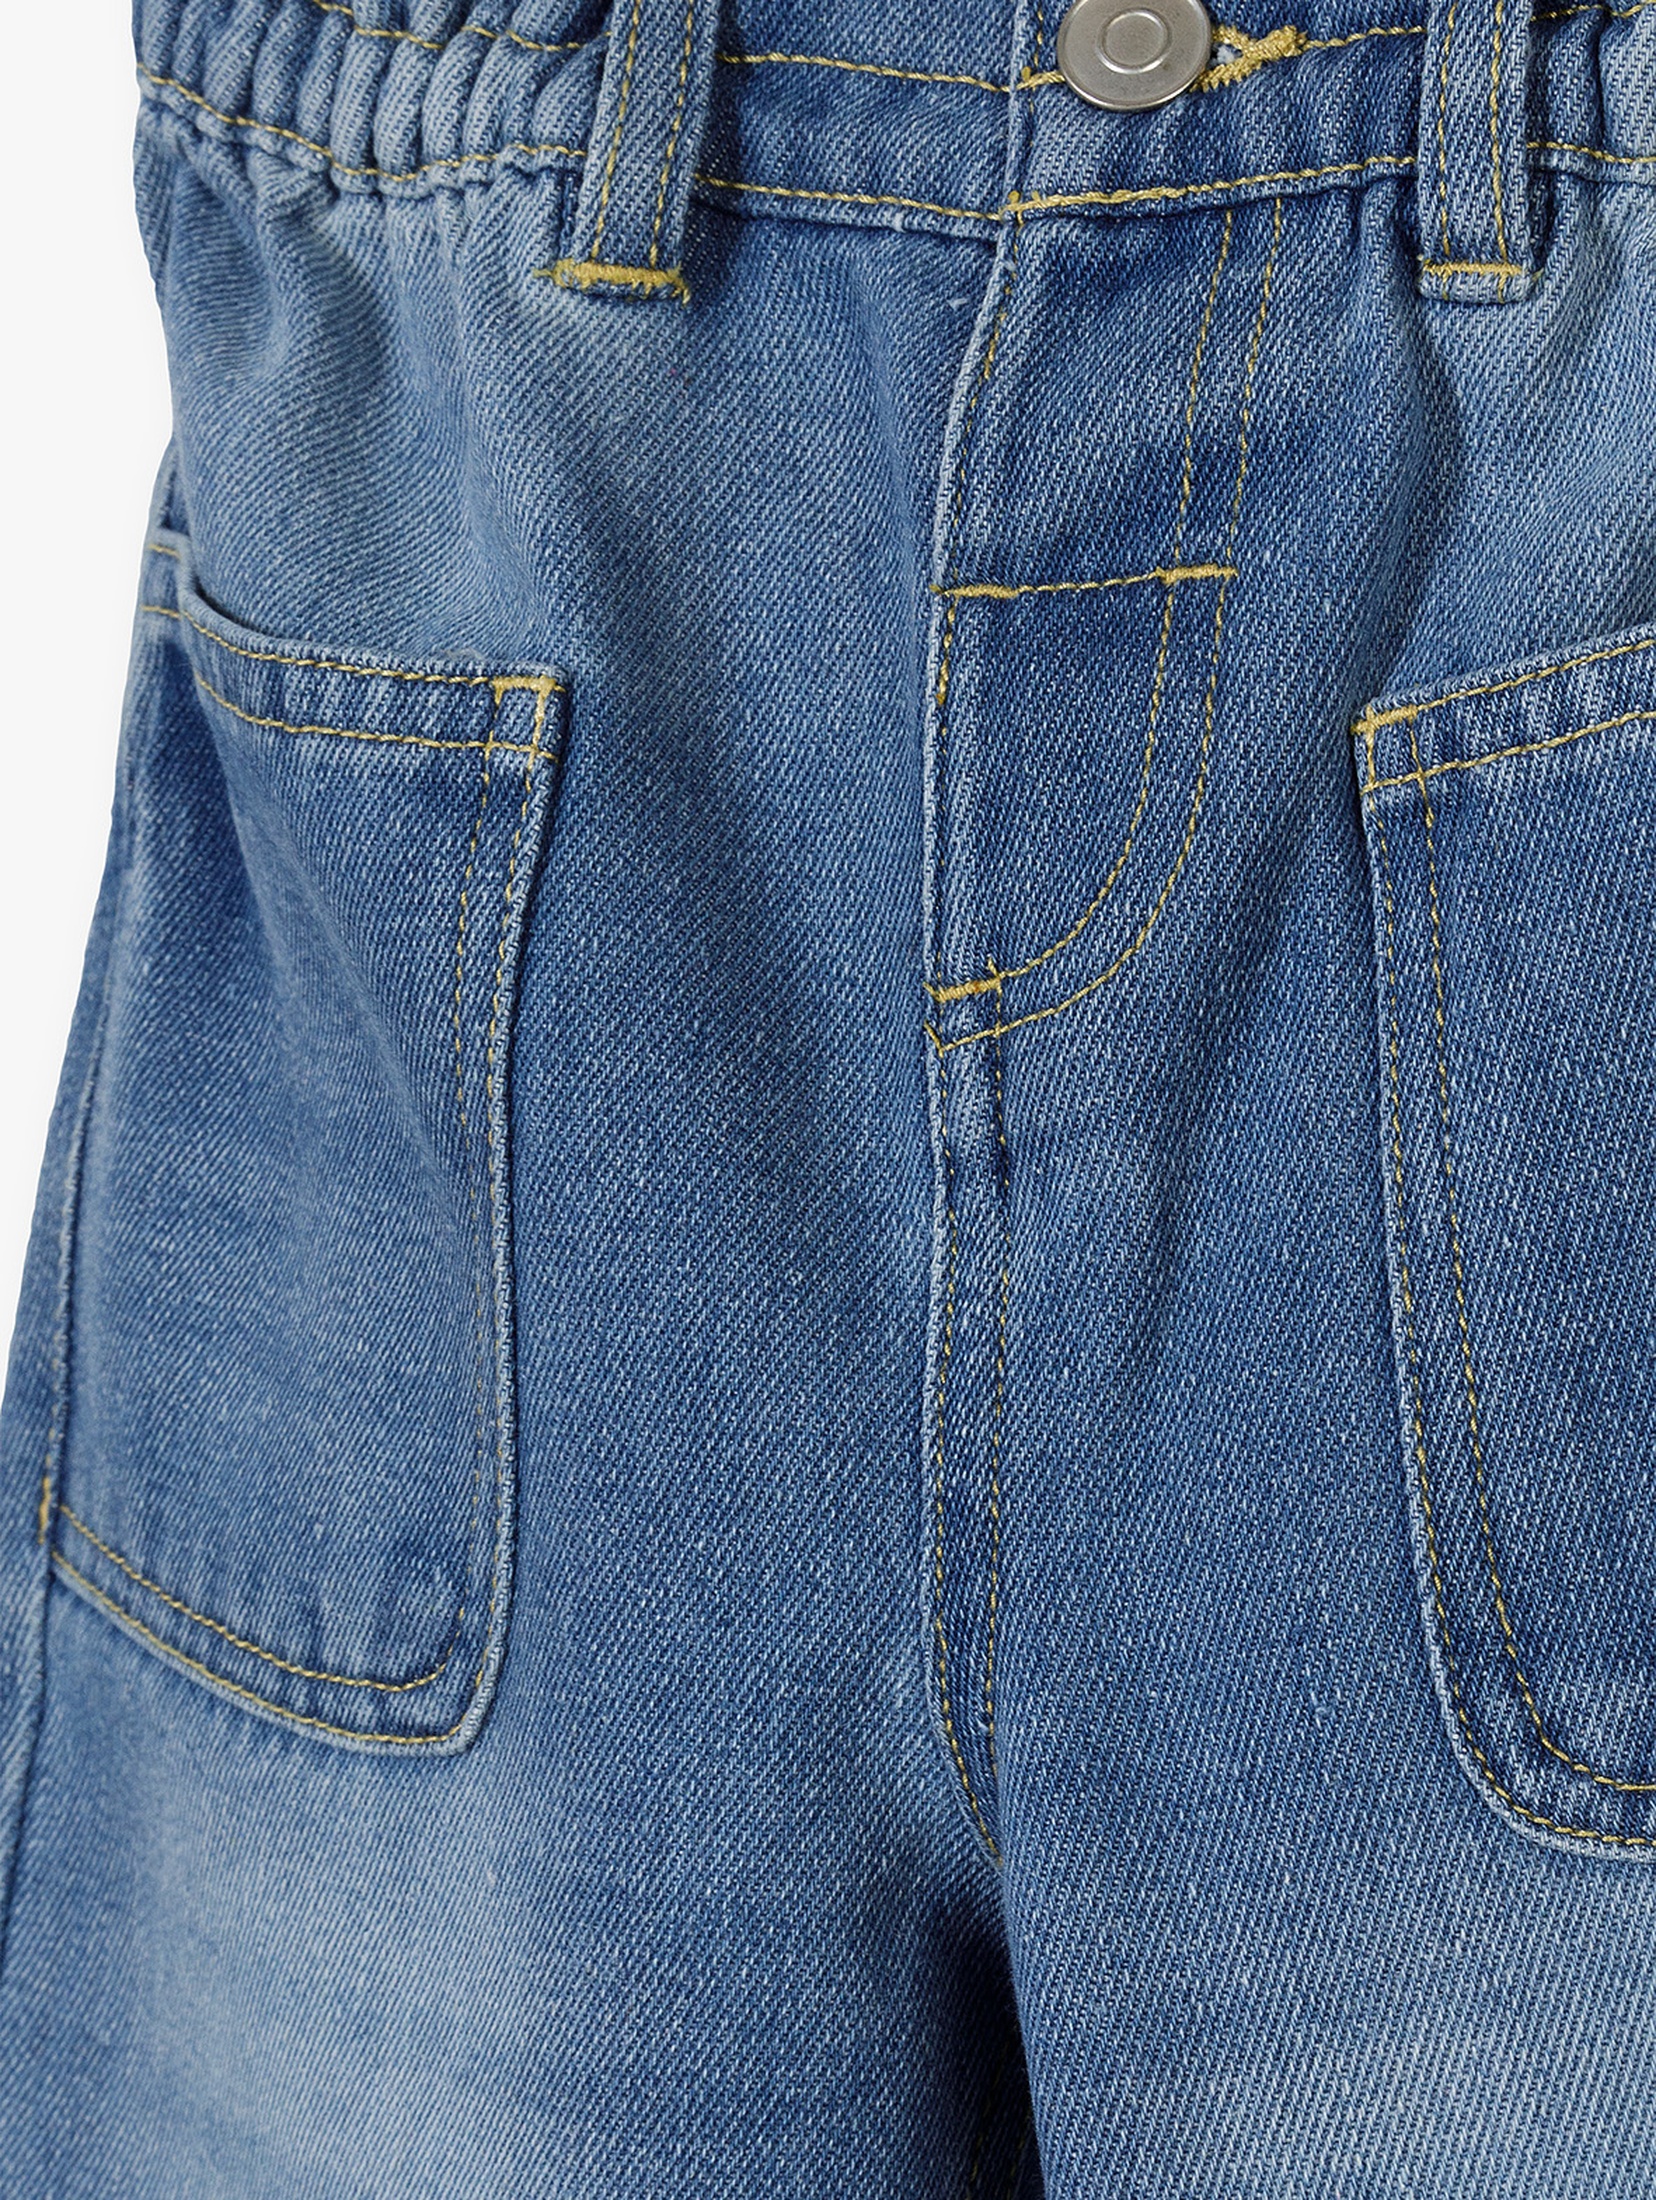 Spodnie jeansowe dla dziewczynki niebieskie - fason mom